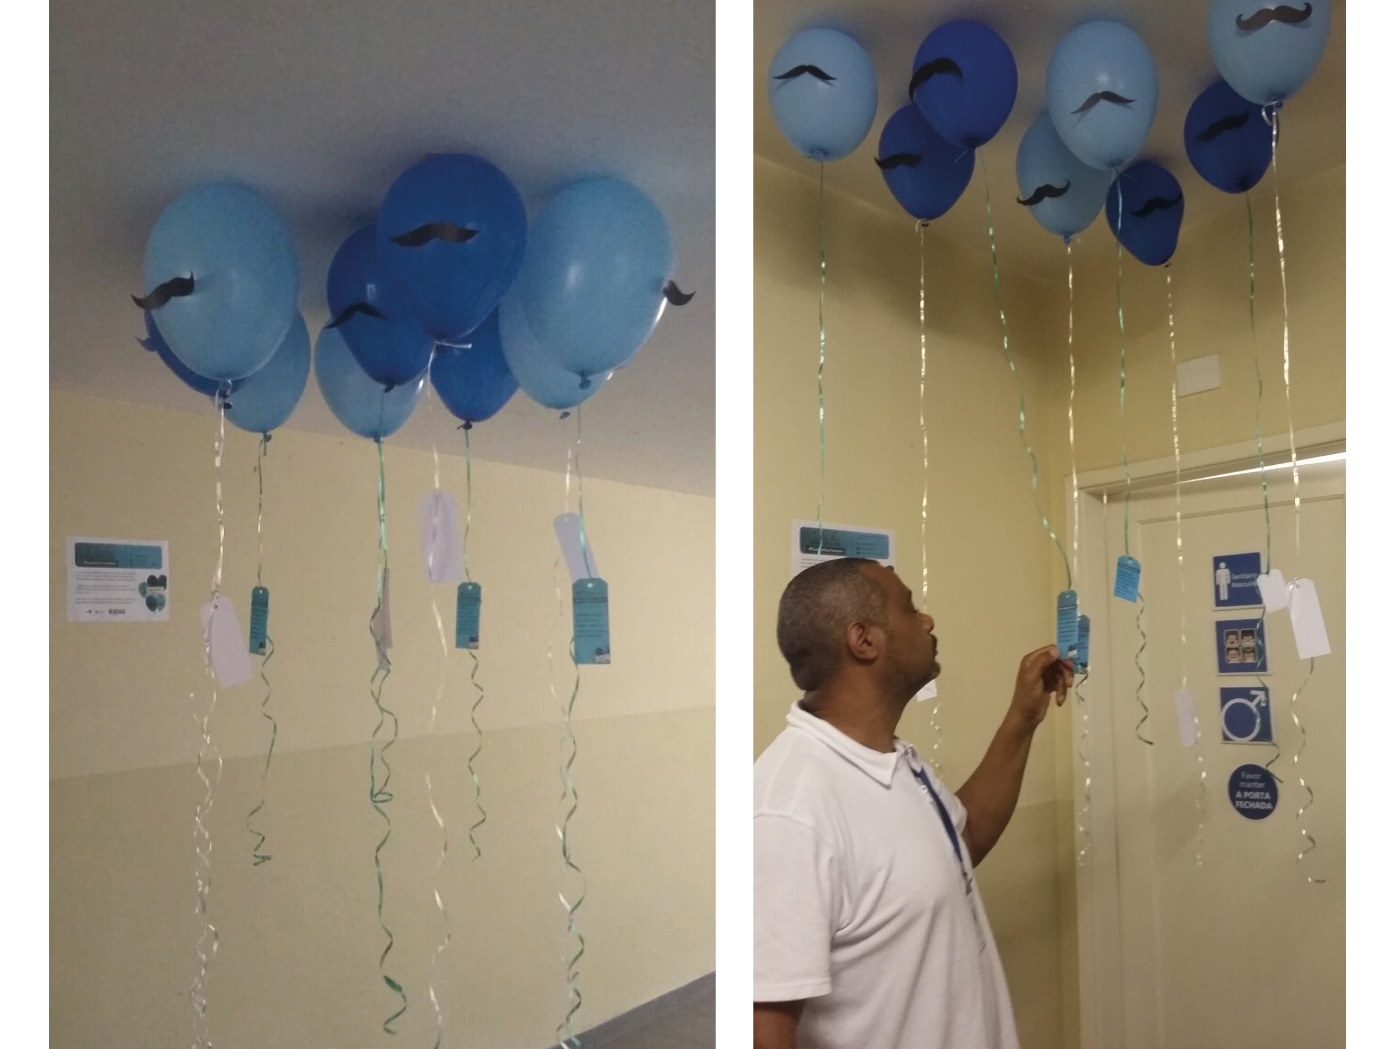 (descrição da imagem: Fotos da decoração do prédio do CEDEPS com bexigas azuis com bigodes, homem lendo mensagem amarrada na extremidade da bexiga)